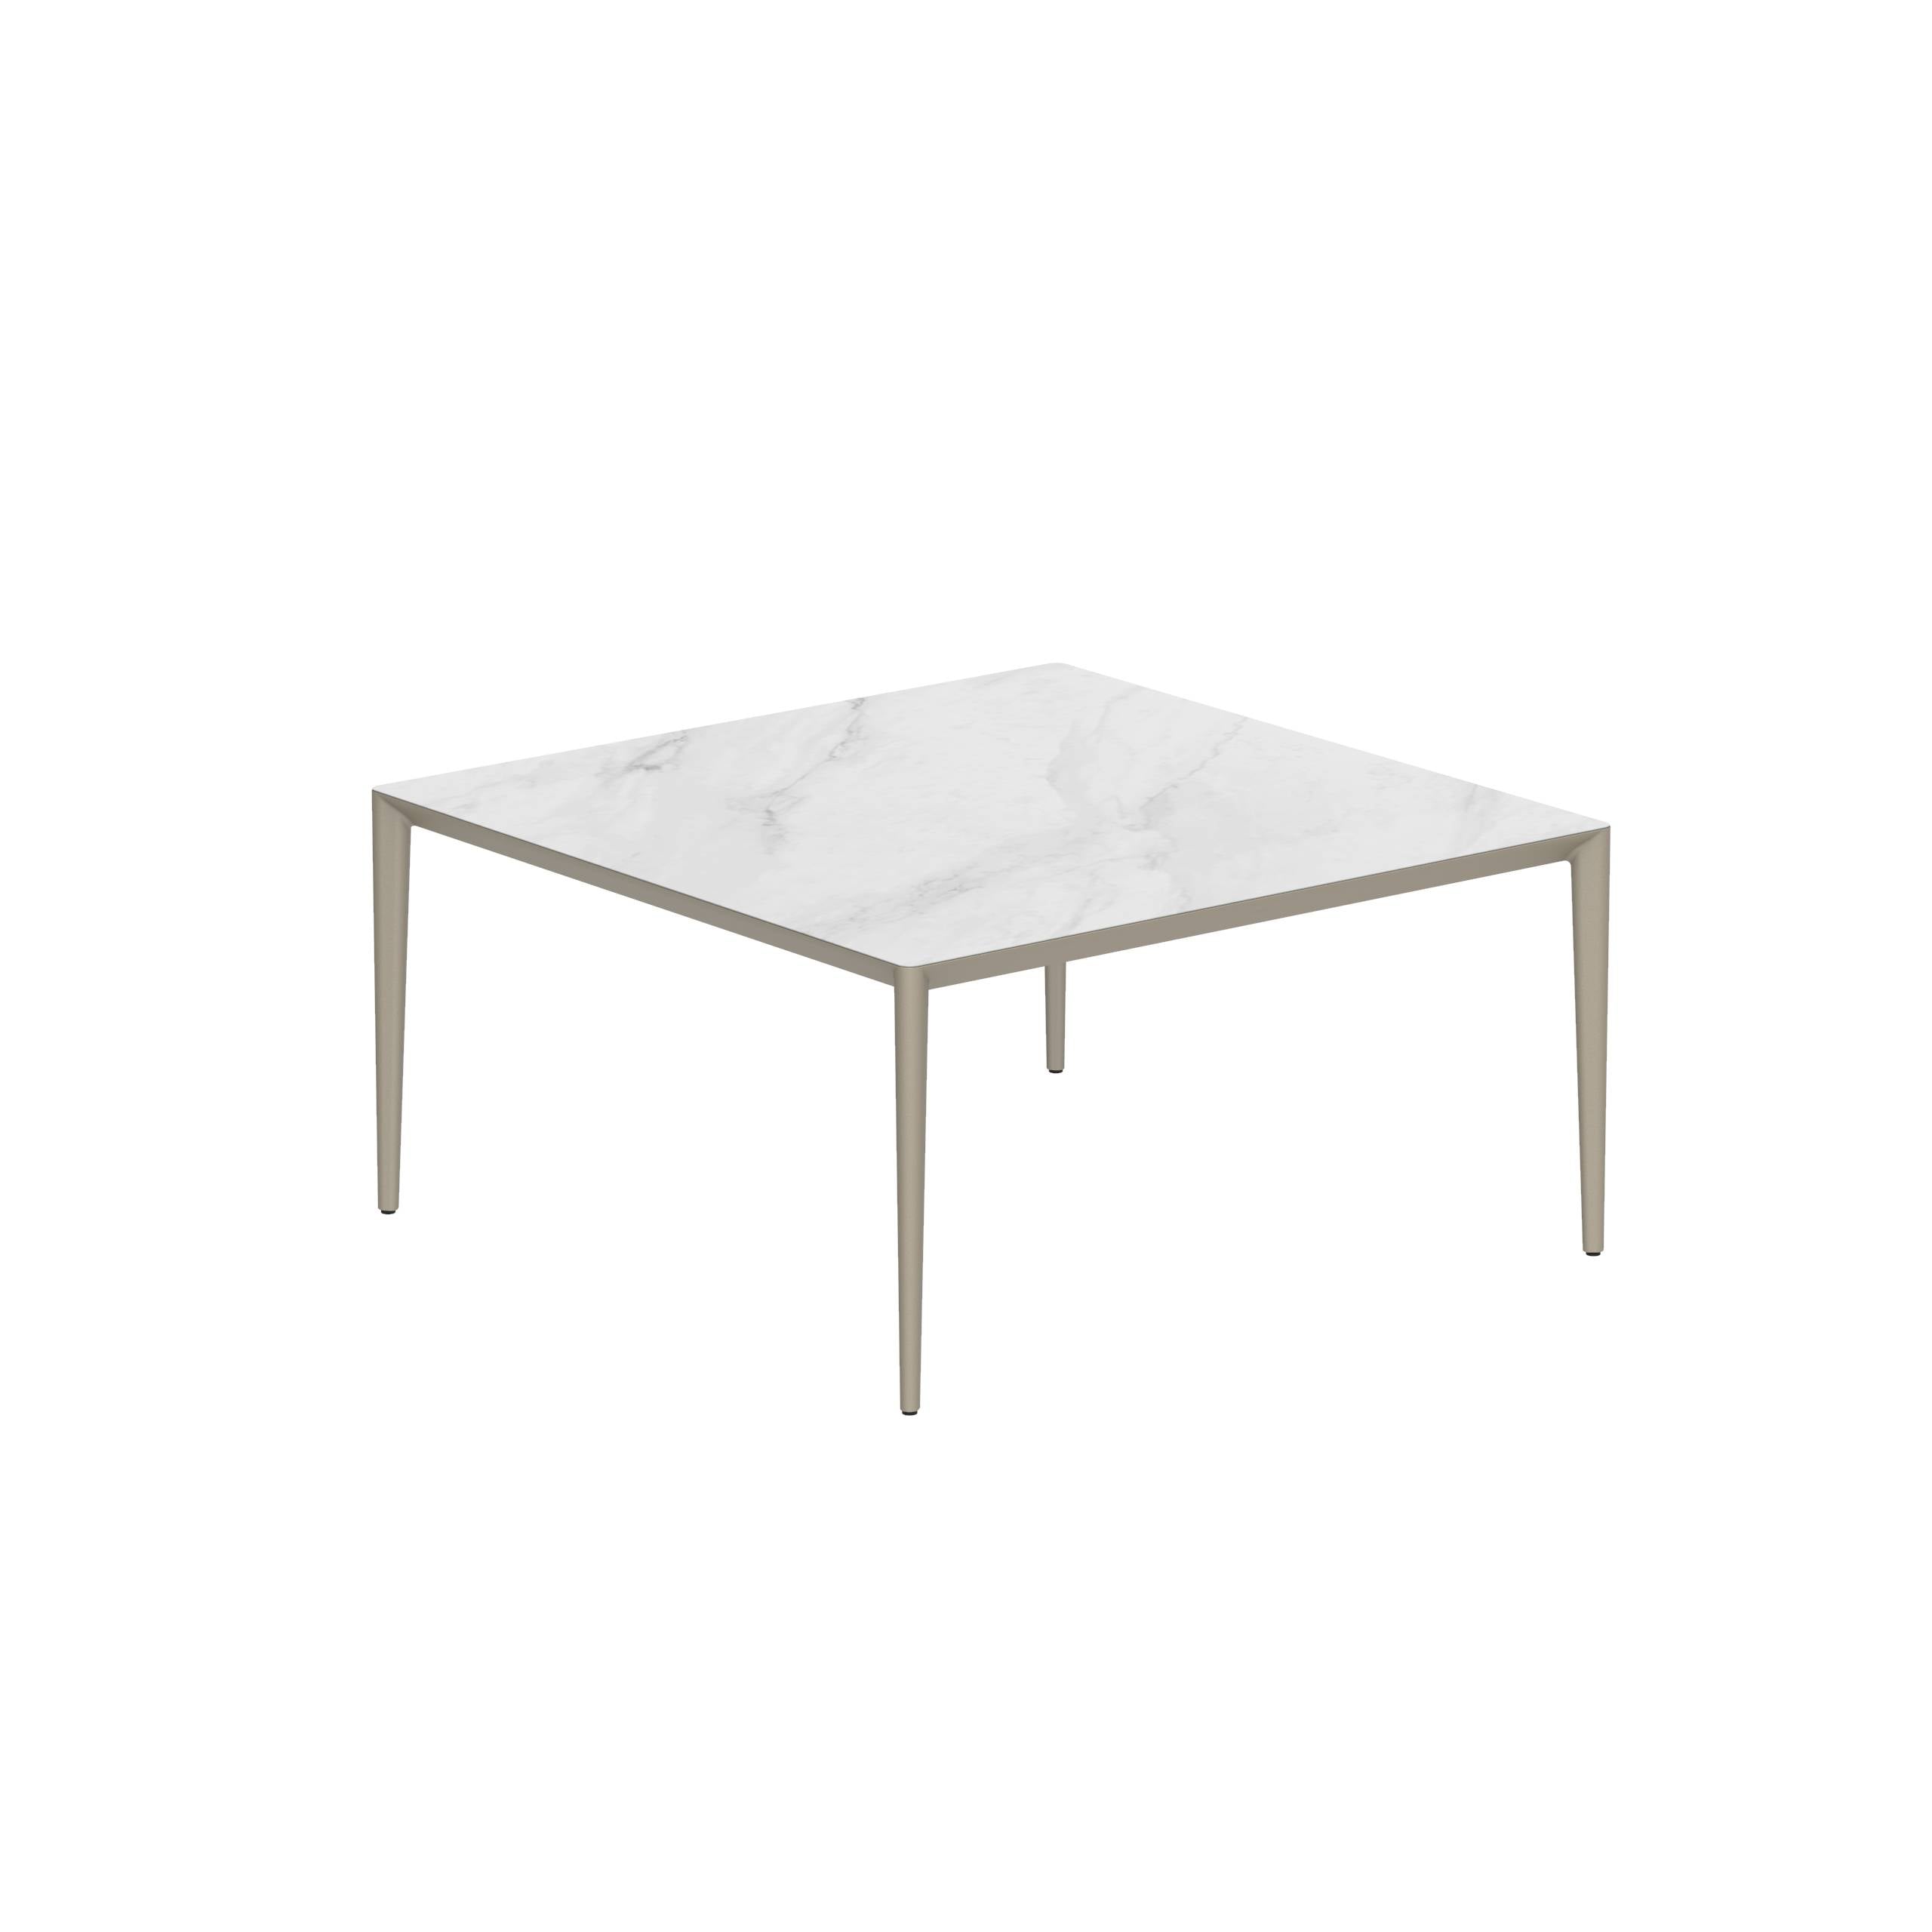 U-Nite Table 150x150cm Sand With Ceramic Tabletop In Bianco Statuario